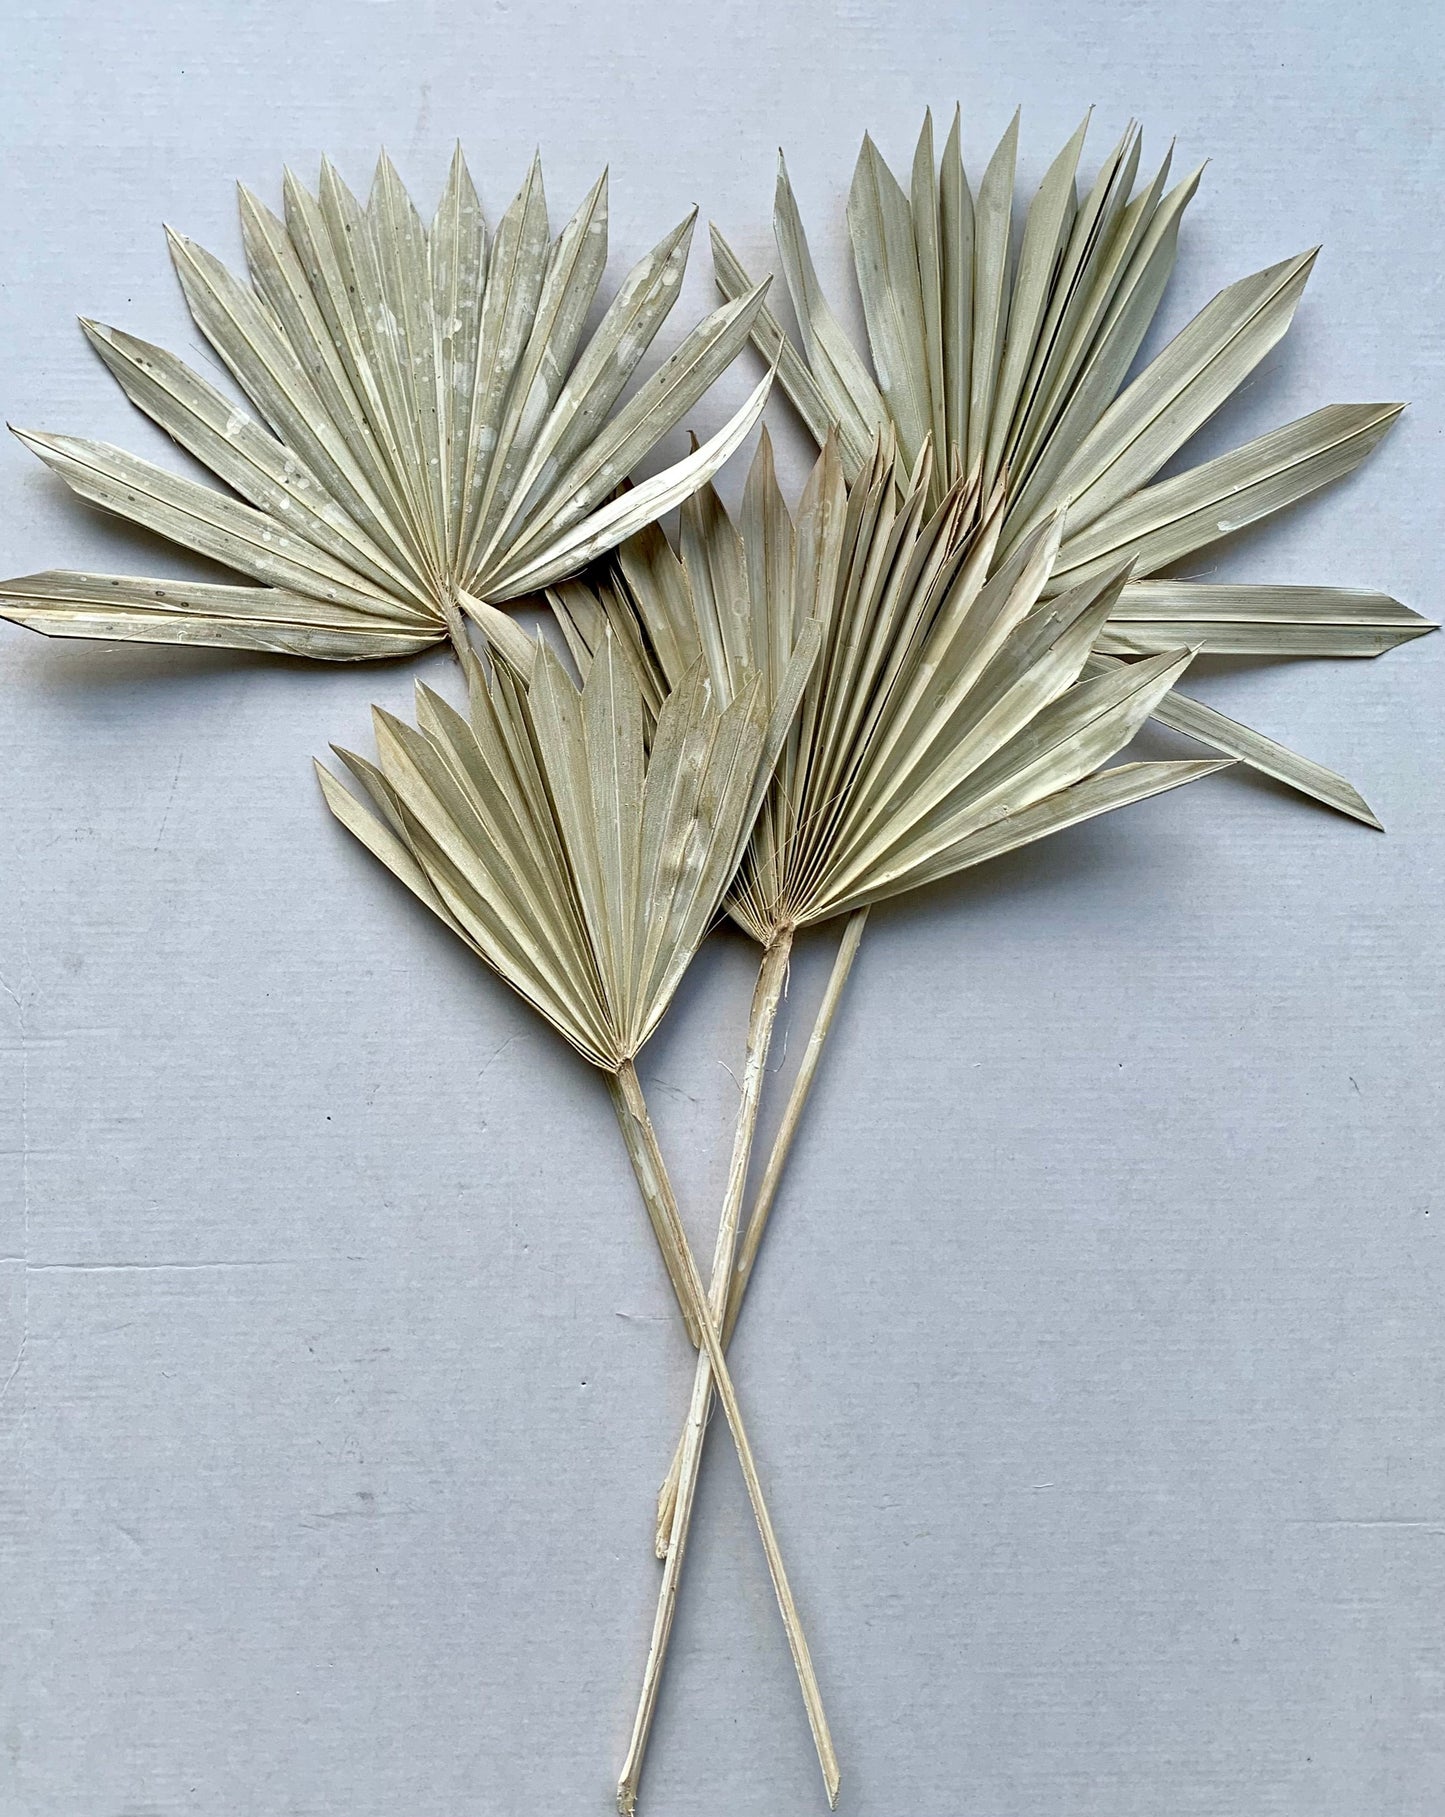 Dried palm leaf